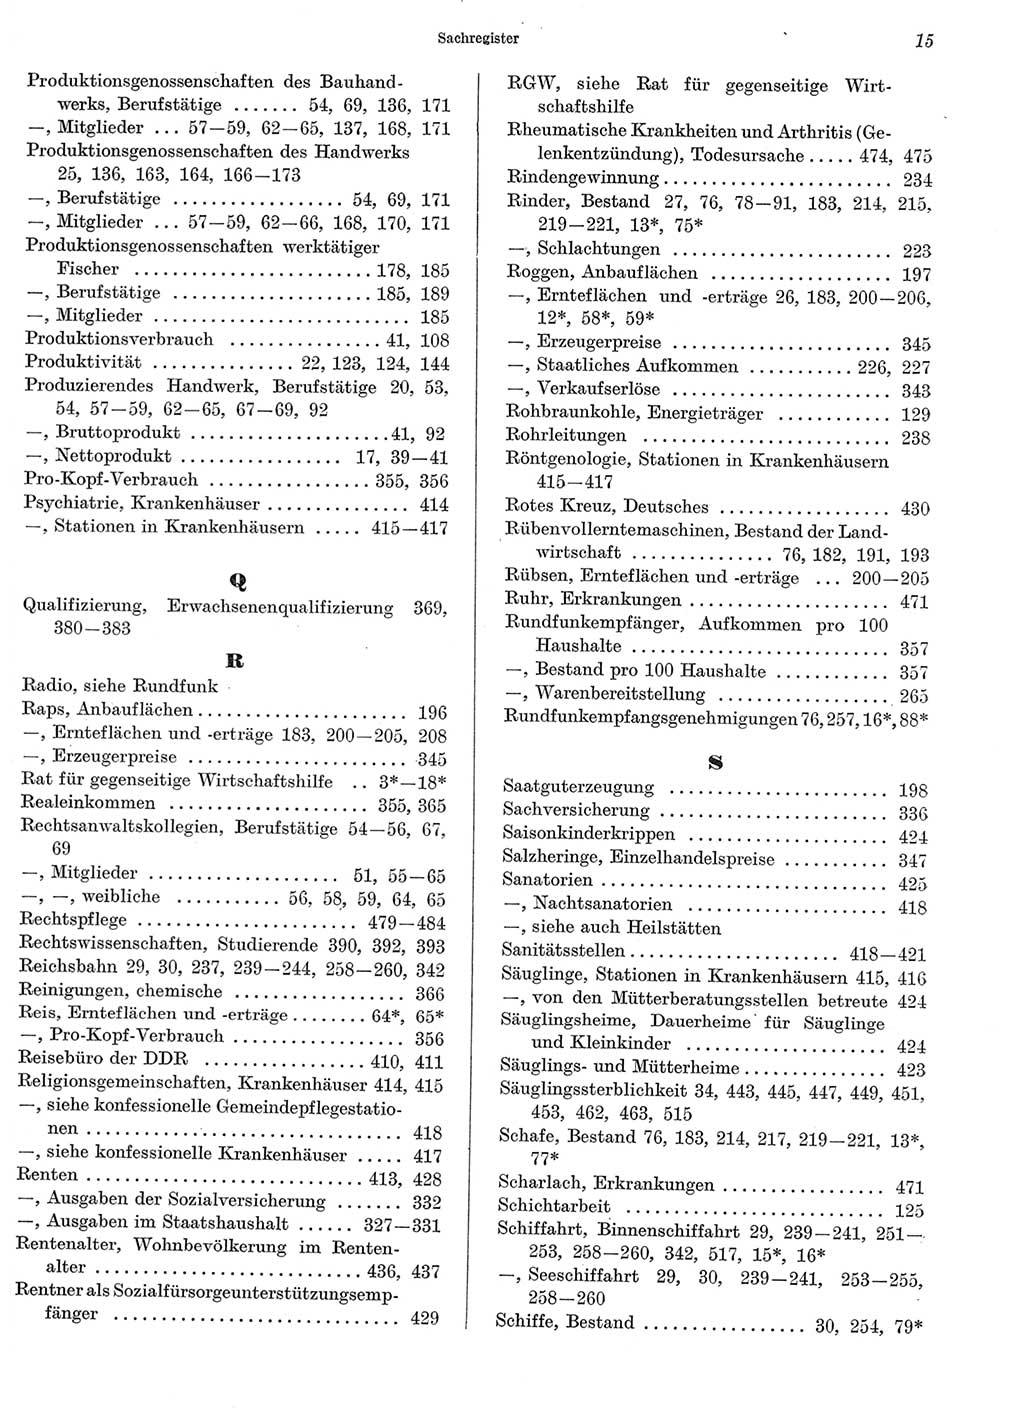 Statistisches Jahrbuch der Deutschen Demokratischen Republik (DDR) 1969, Seite 15 (Stat. Jb. DDR 1969, S. 15)